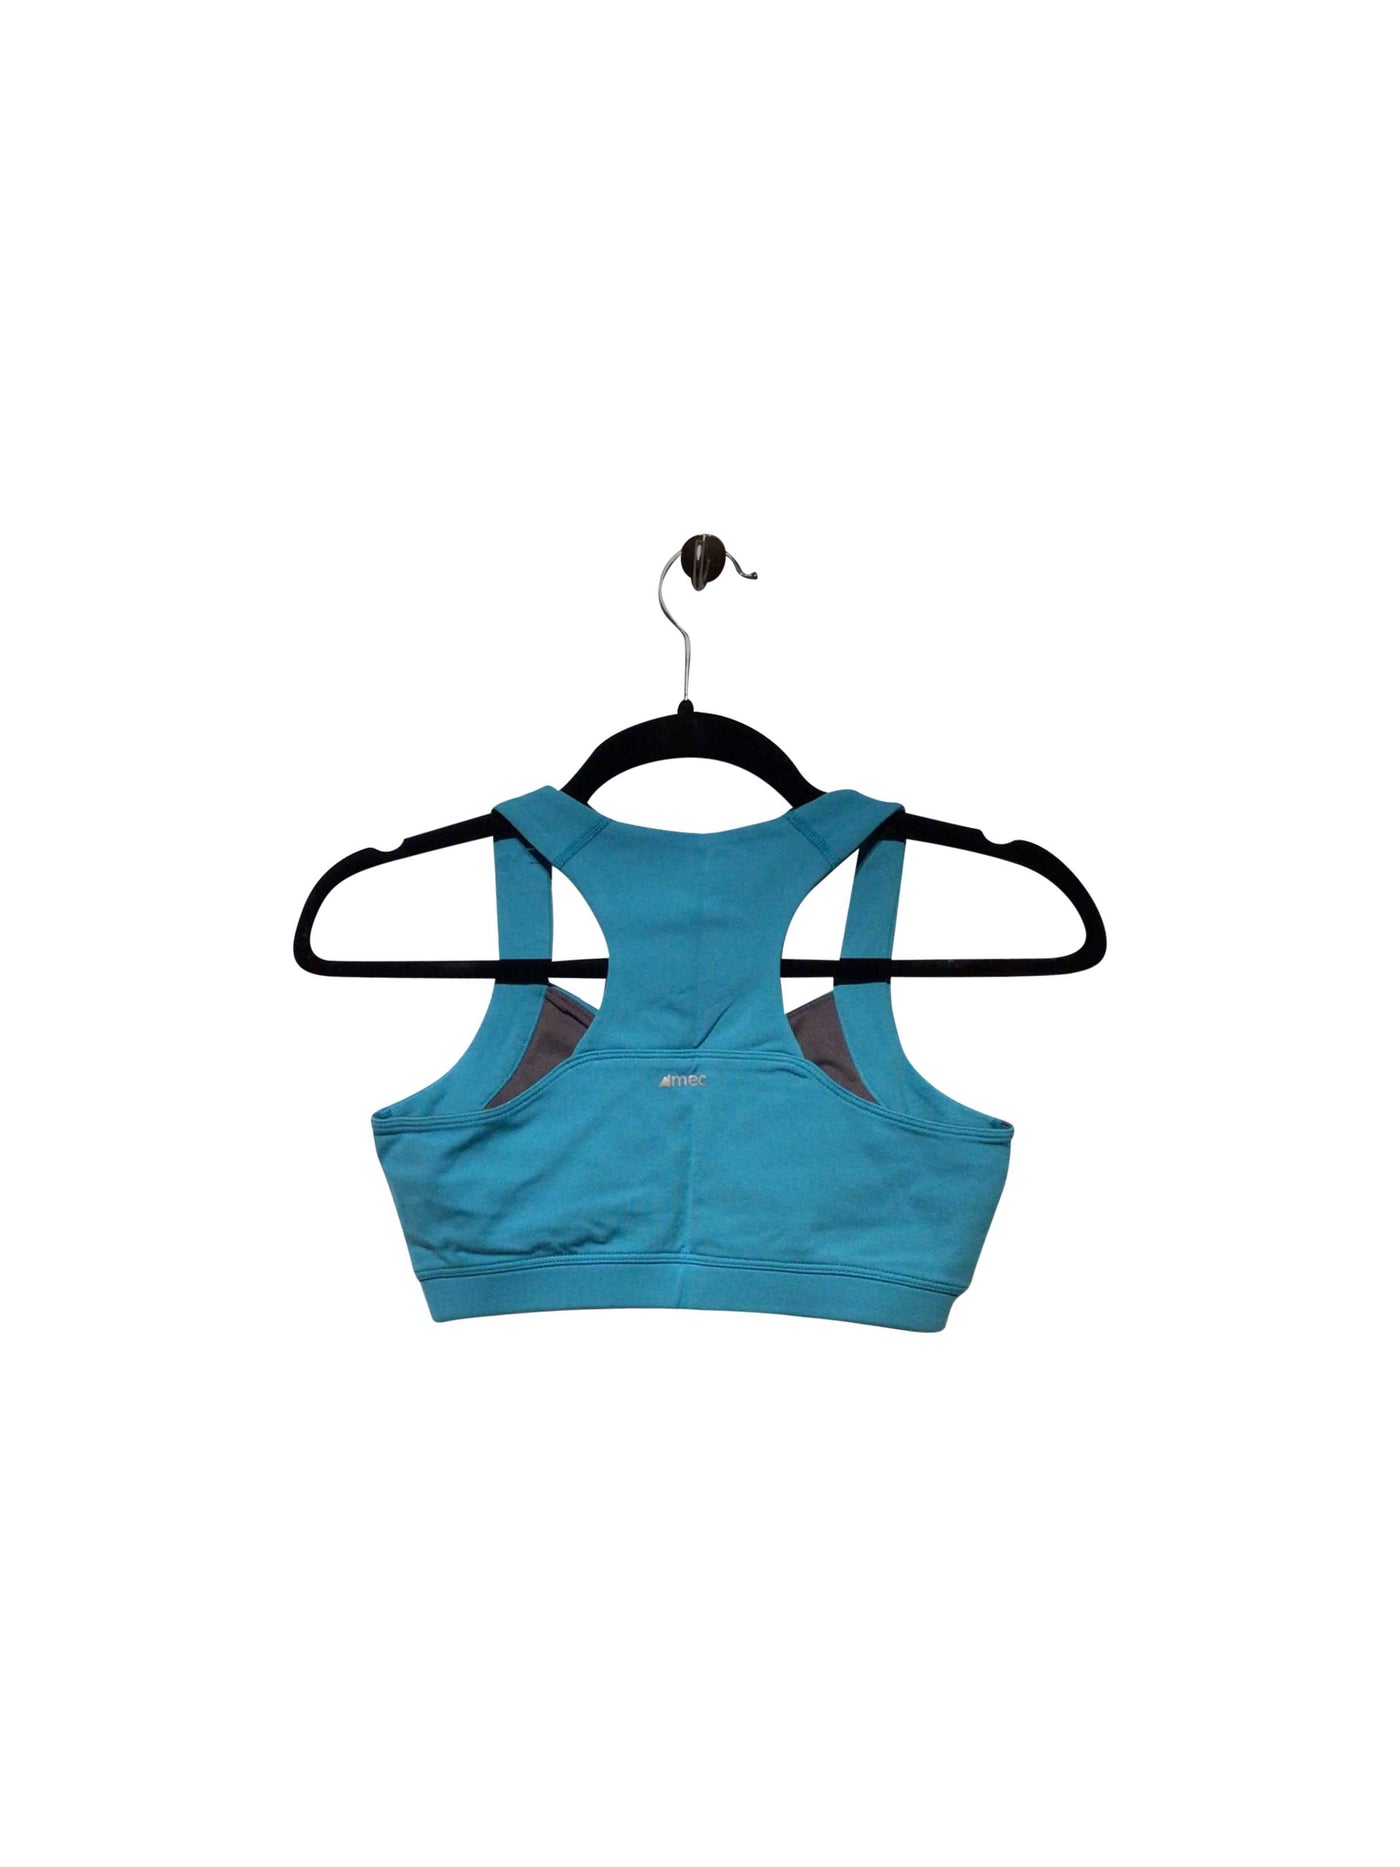 MEC Activewear Sport bra in Blue  -  S  16.00 Koop